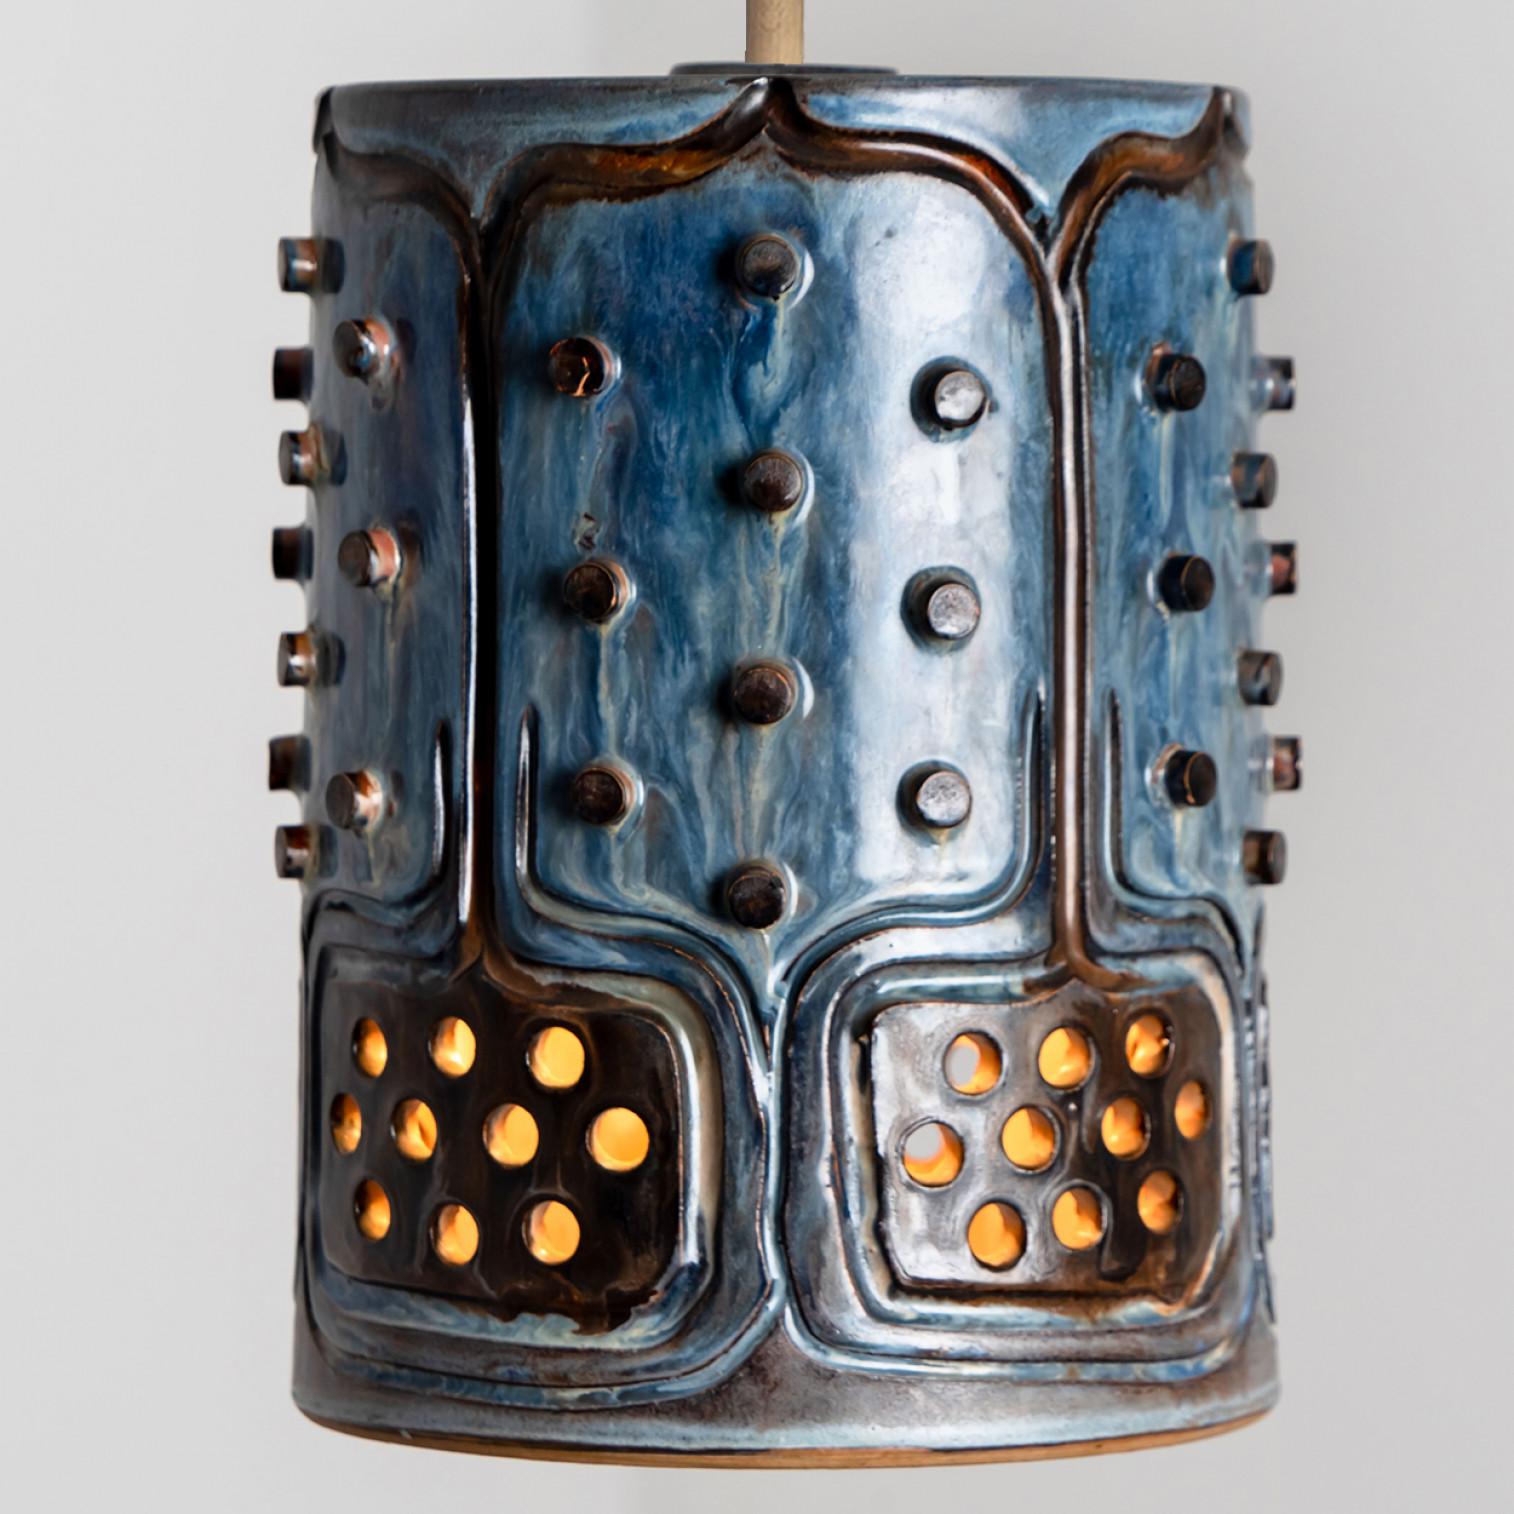 Arrangement ludique d'étonnantes lampes suspendues rondes à la forme inhabituelle, fabriquées dans les années 1970 au Danemark avec de riches céramiques brunes colorées en bleu. Nous disposons d'une multitude d'ensembles et de compositions